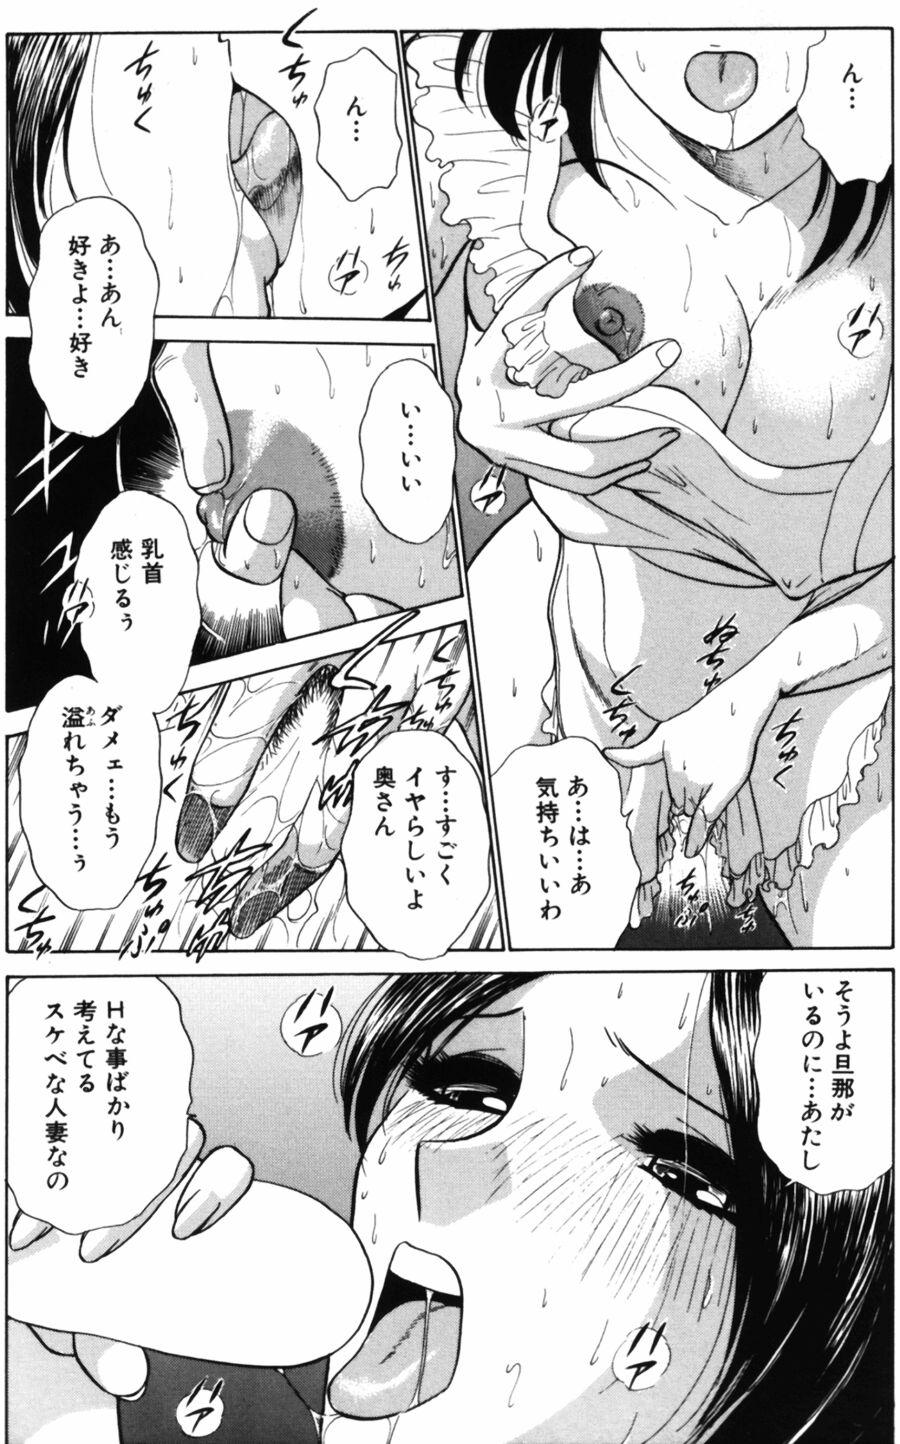 Groping Ai wa Kagi no Kazu dake Vol.2 Sub - Page 6